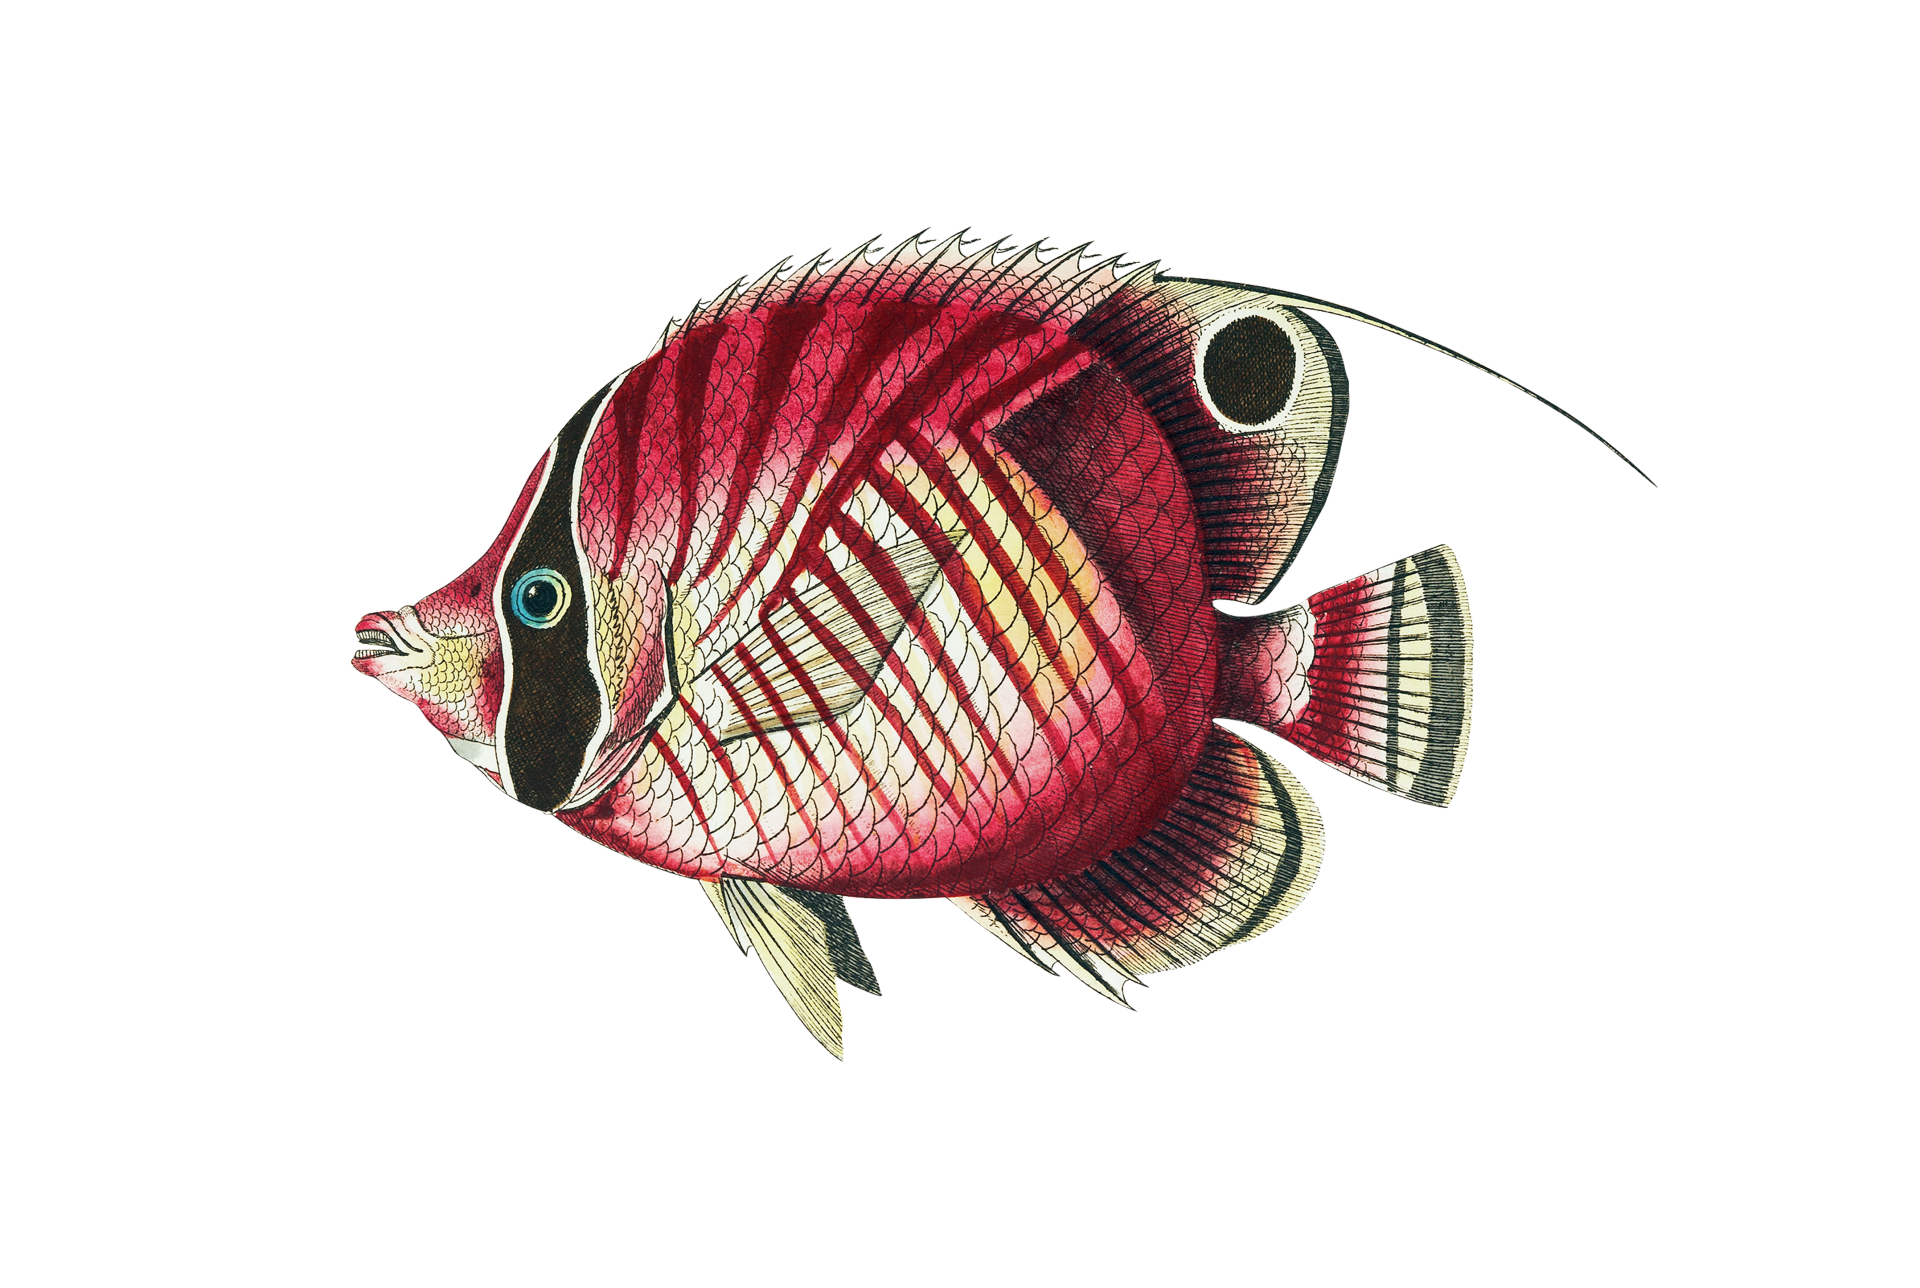 Clipart Fisch Vintage gemalt Kostenloses Stock Bild - Public Domain ...